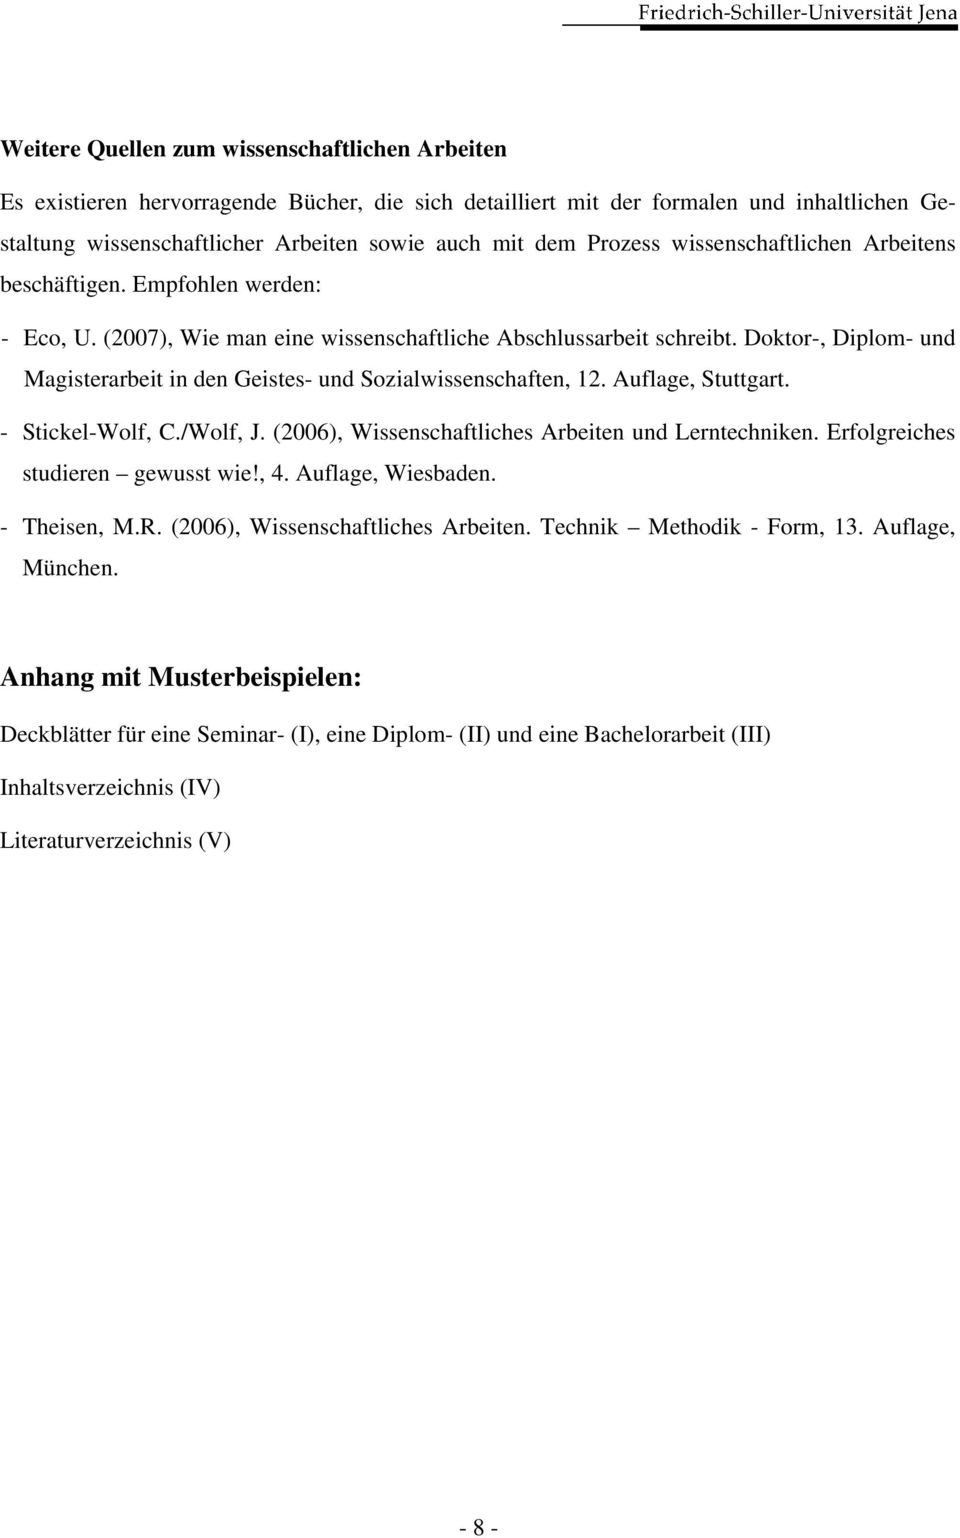 Doktor-, Diplom- und Magisterarbeit in den Geistes- und Sozialwissenschaften, 12. Auflage, Stuttgart. - Stickel-Wolf, C./Wolf, J. (2006), Wissenschaftliches Arbeiten und Lerntechniken.